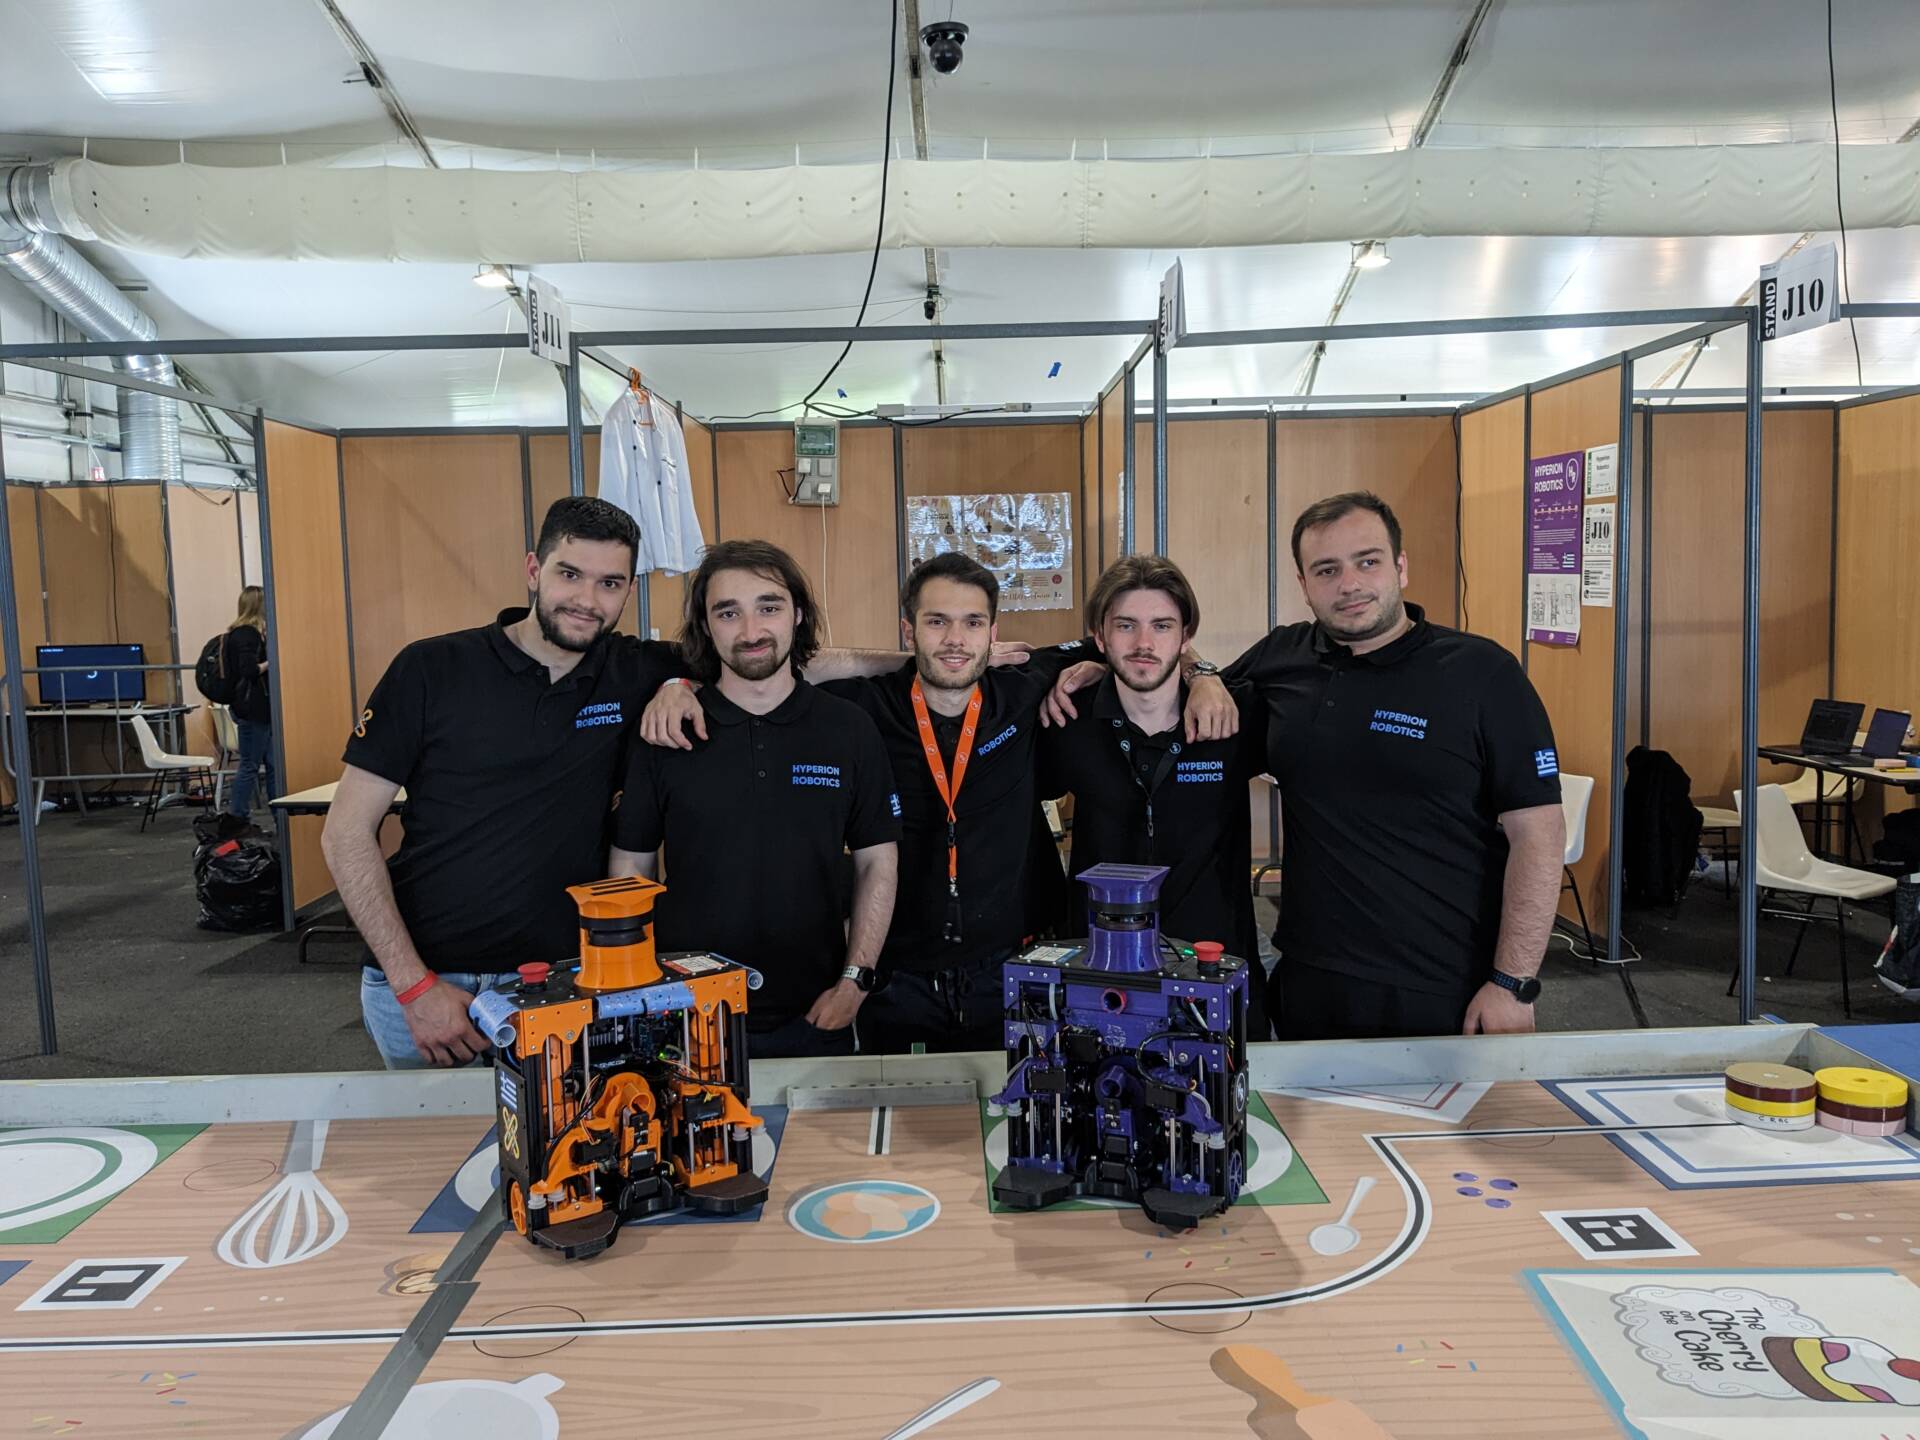 Ευρωπαϊκός Διαγωνισμός Ρομποτικής με συμμετοχή της φοιτητικής ομάδας Hyperion Robotics του Πανεπιστημίου Δυτικής Μακεδονίας